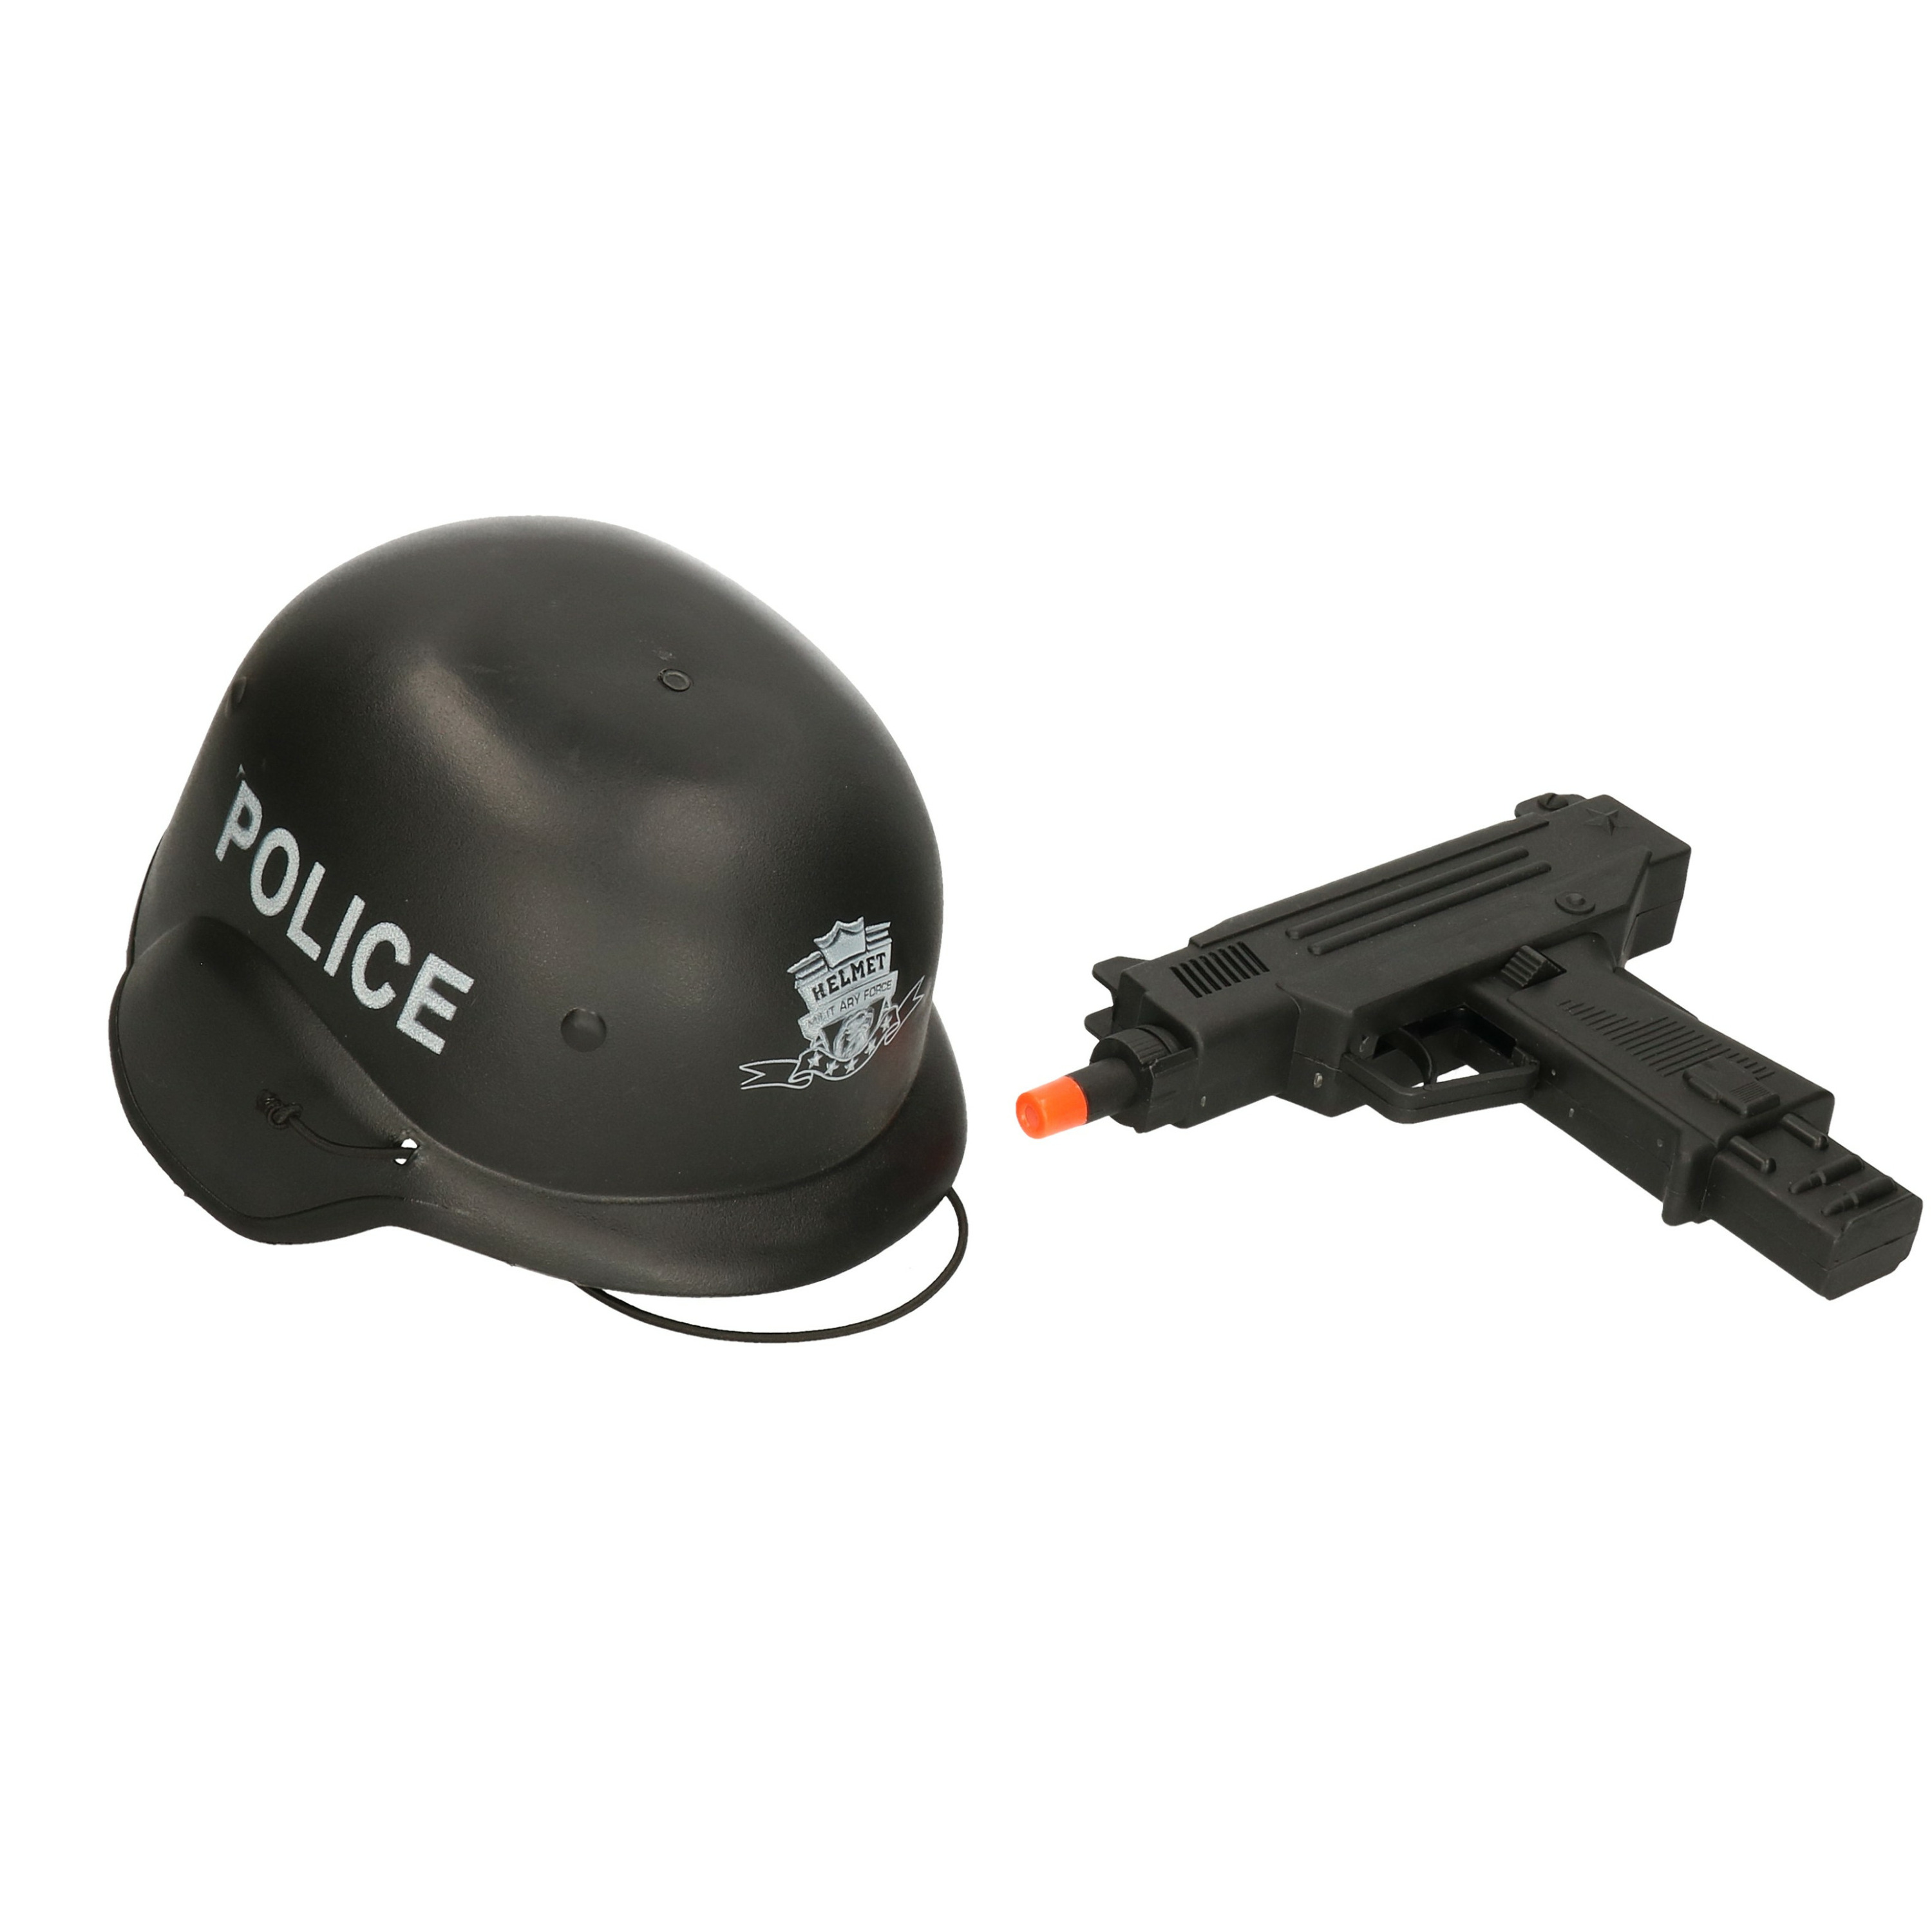 Verkleedaccessoires Politie SWAT team wapen set met pistool en helm